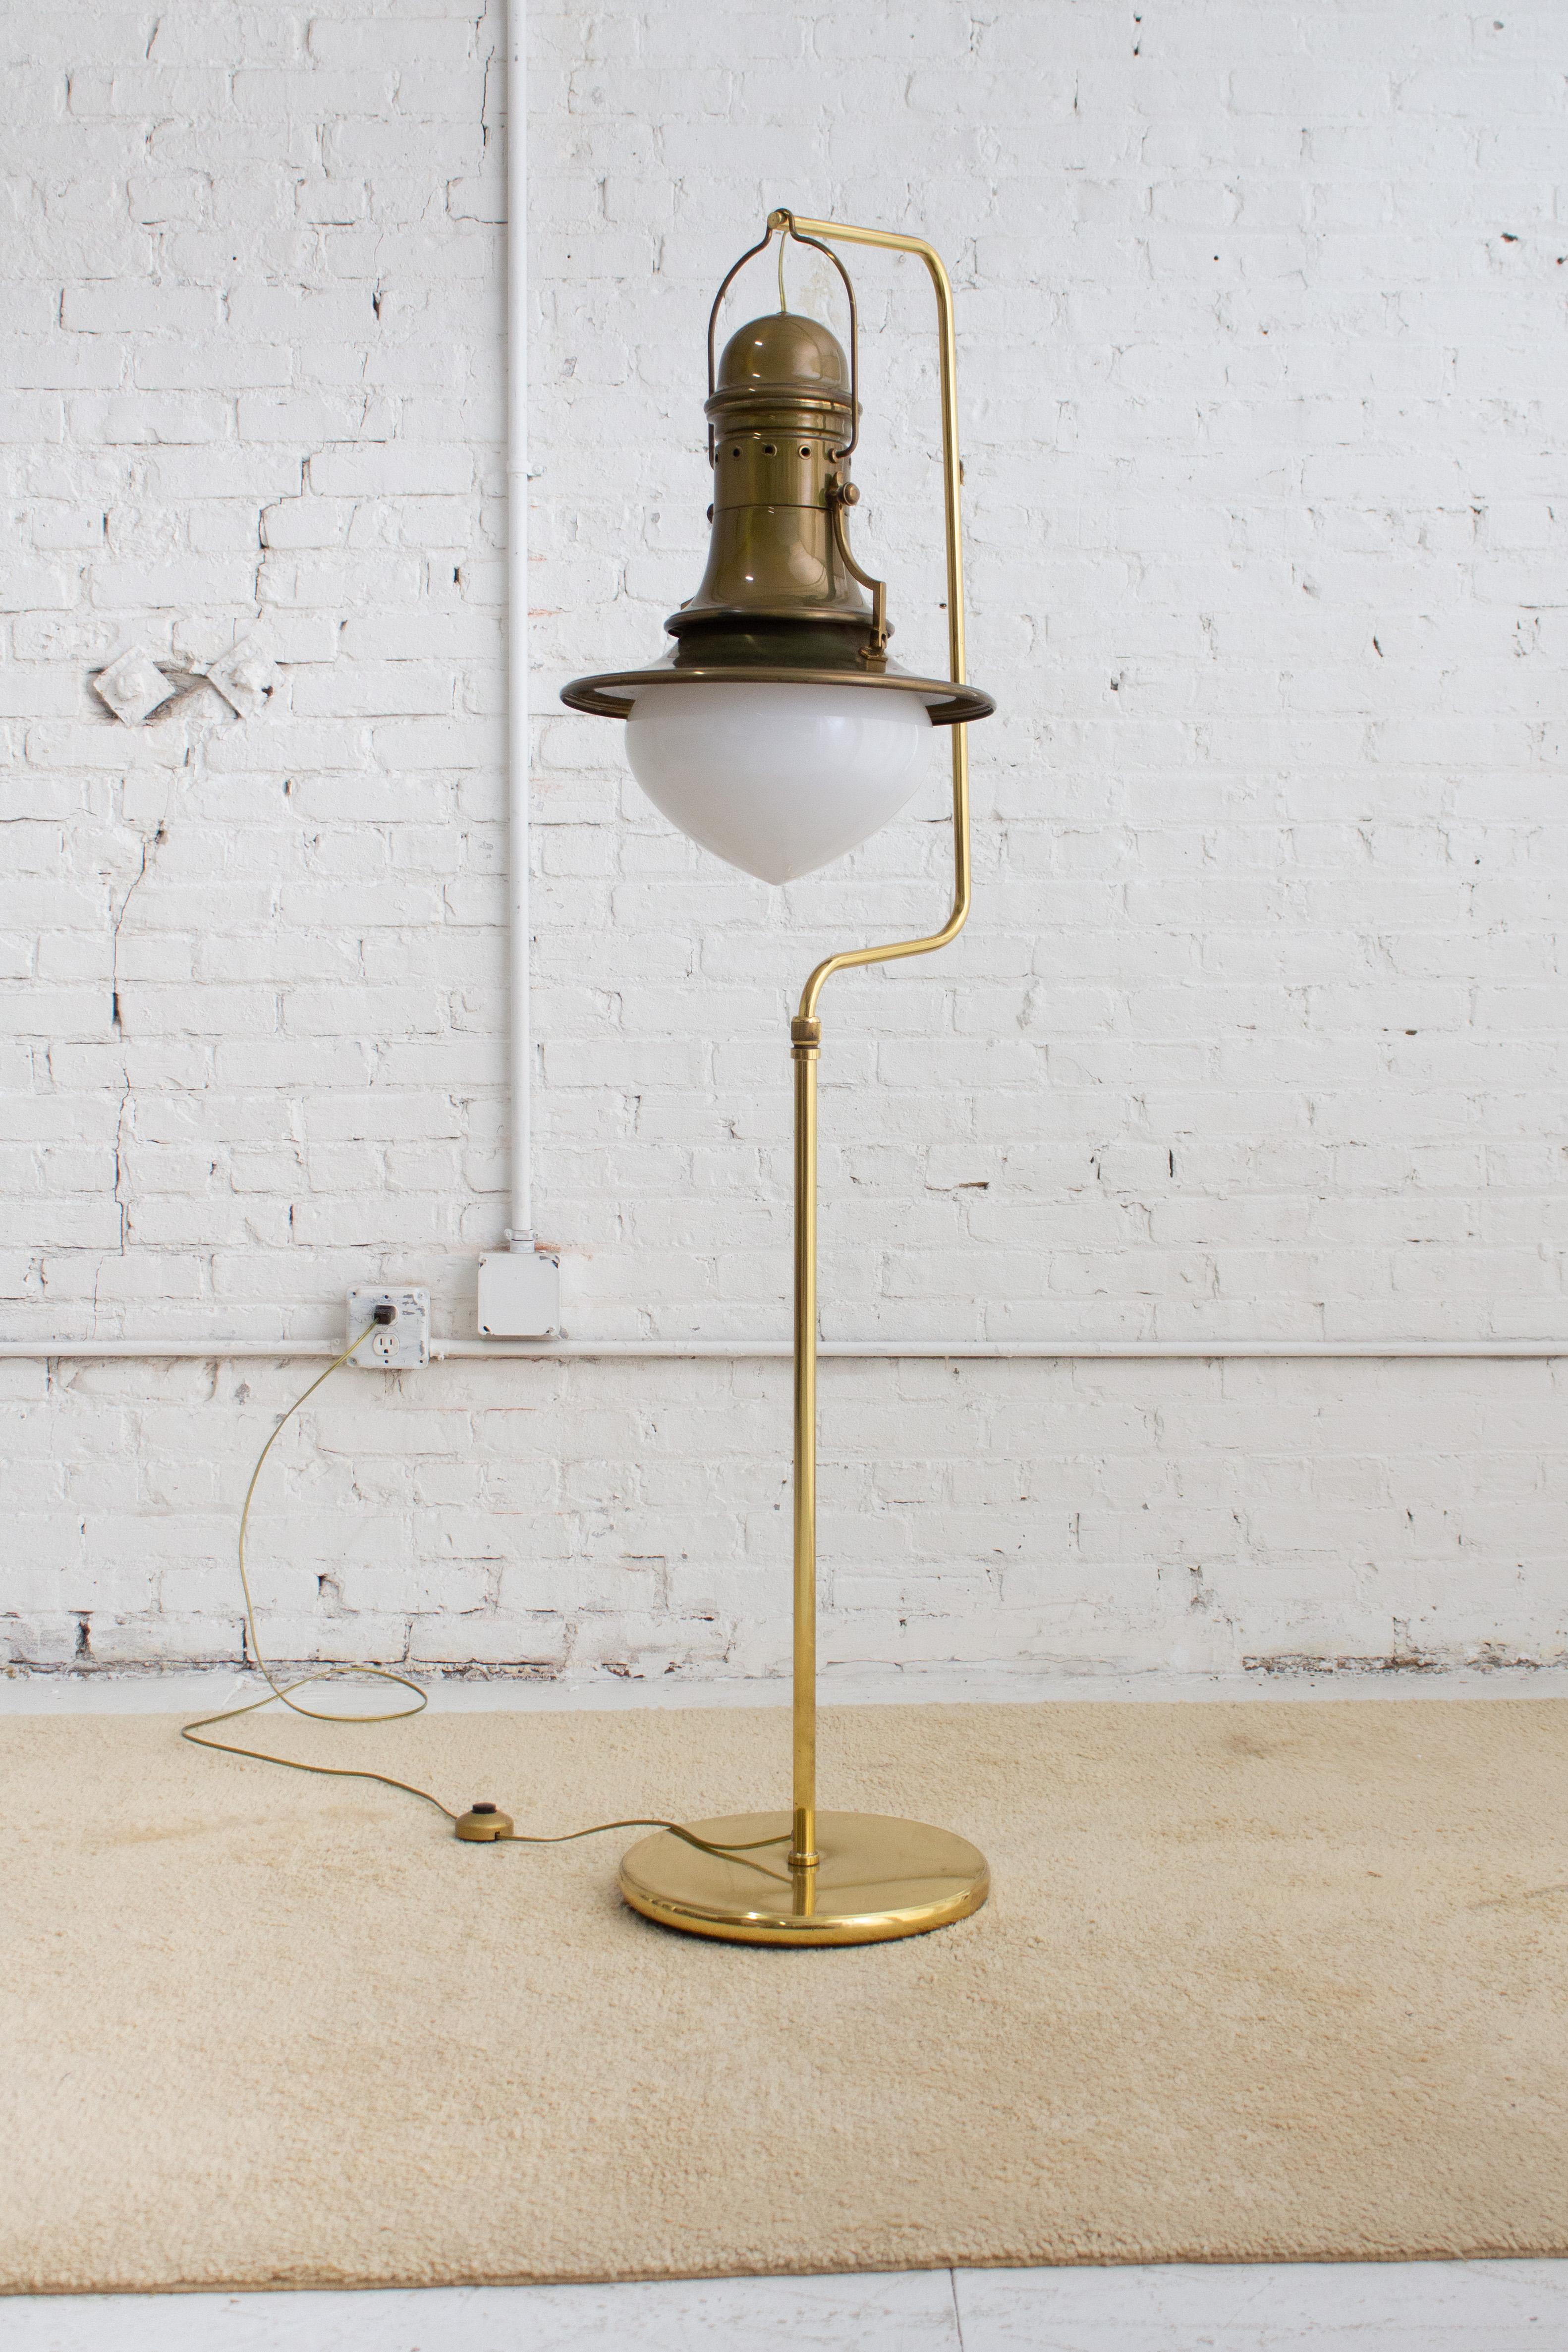 Lampadaire italien de style lanterne. Un support en laiton avec une base lourdement lestée supporte une lanterne en 